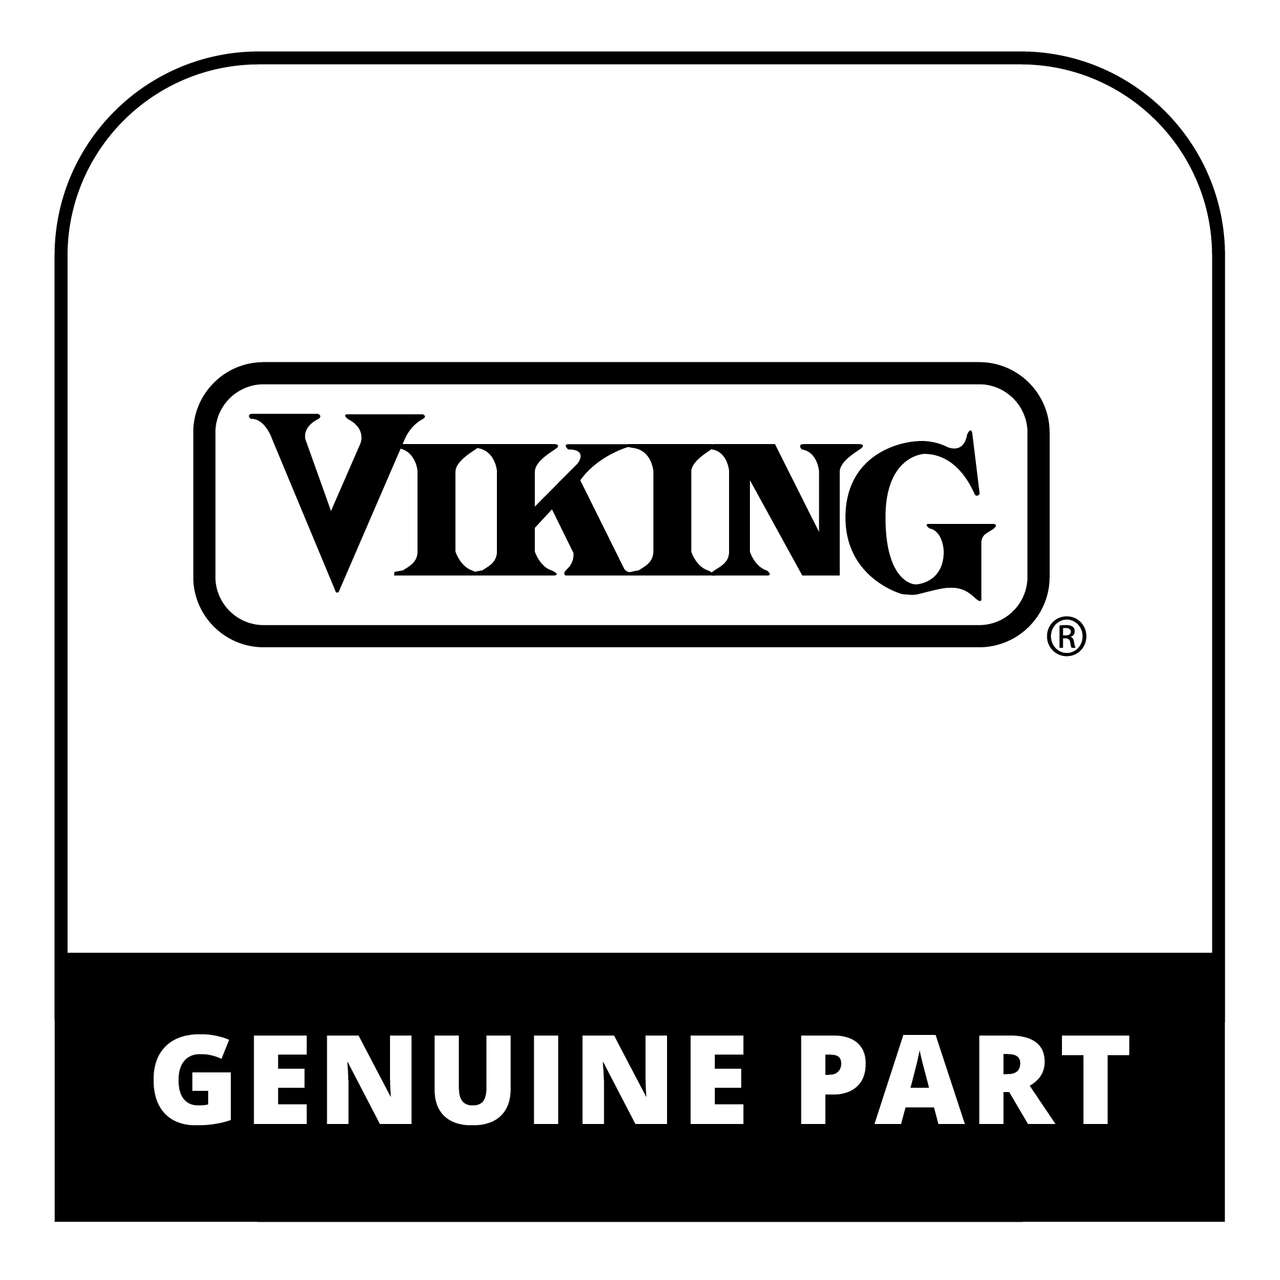 Viking 021144-020 - SERVICE DOOR SKIN KIT 30" GM - Genuine Viking Part